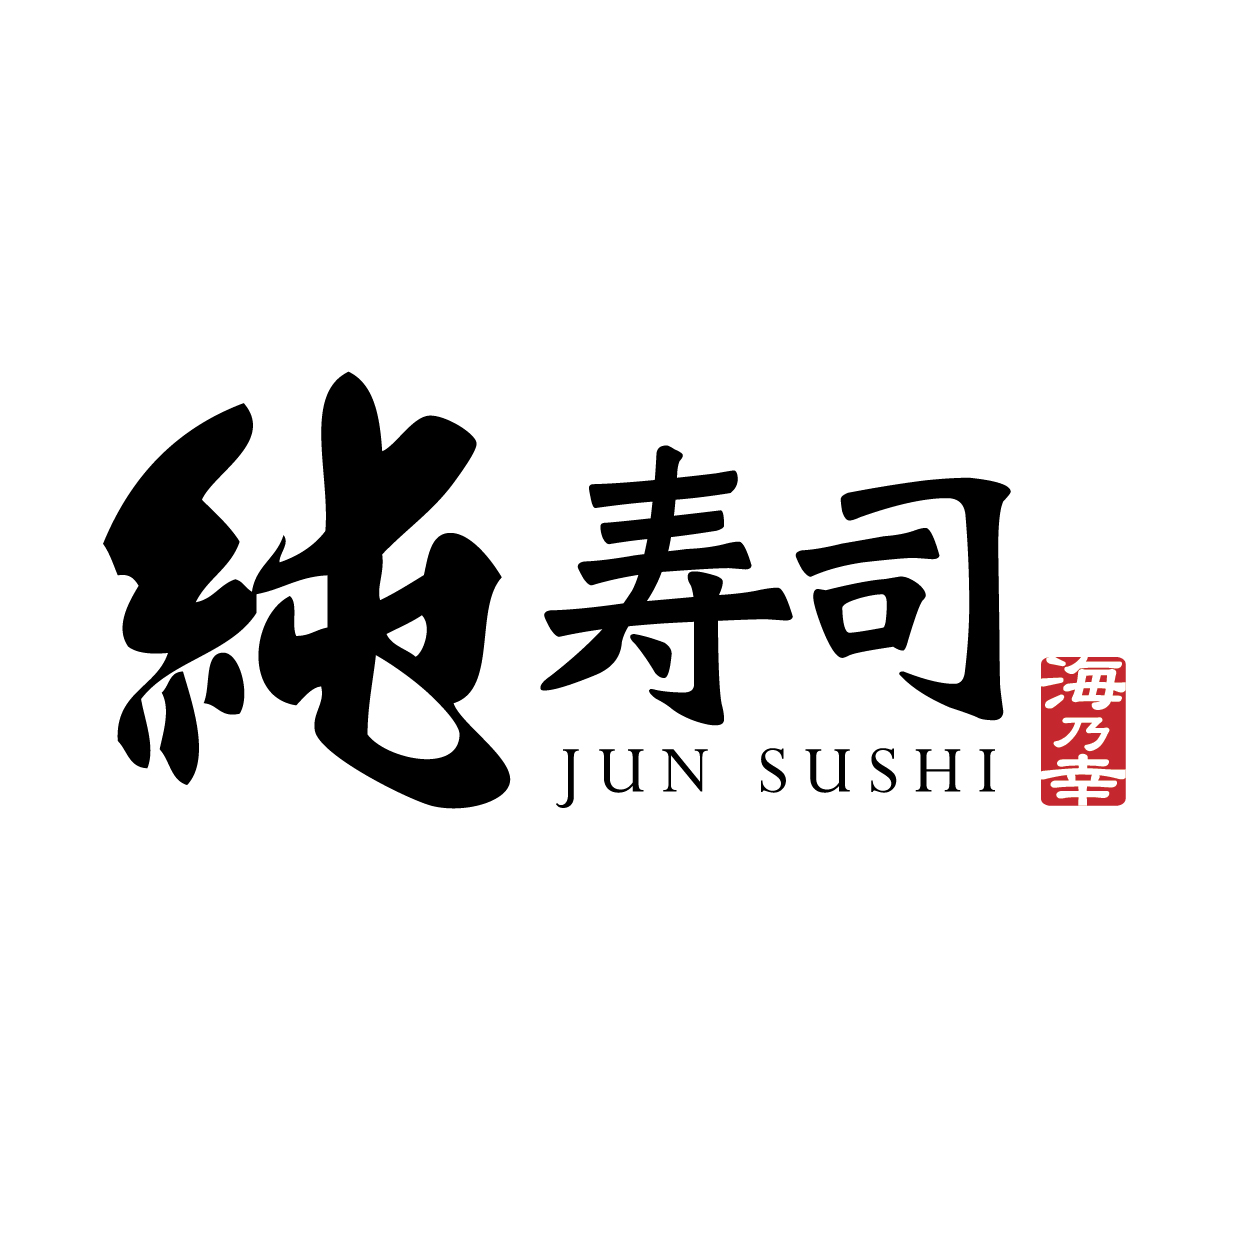 纯寿司 JUN SUSHI